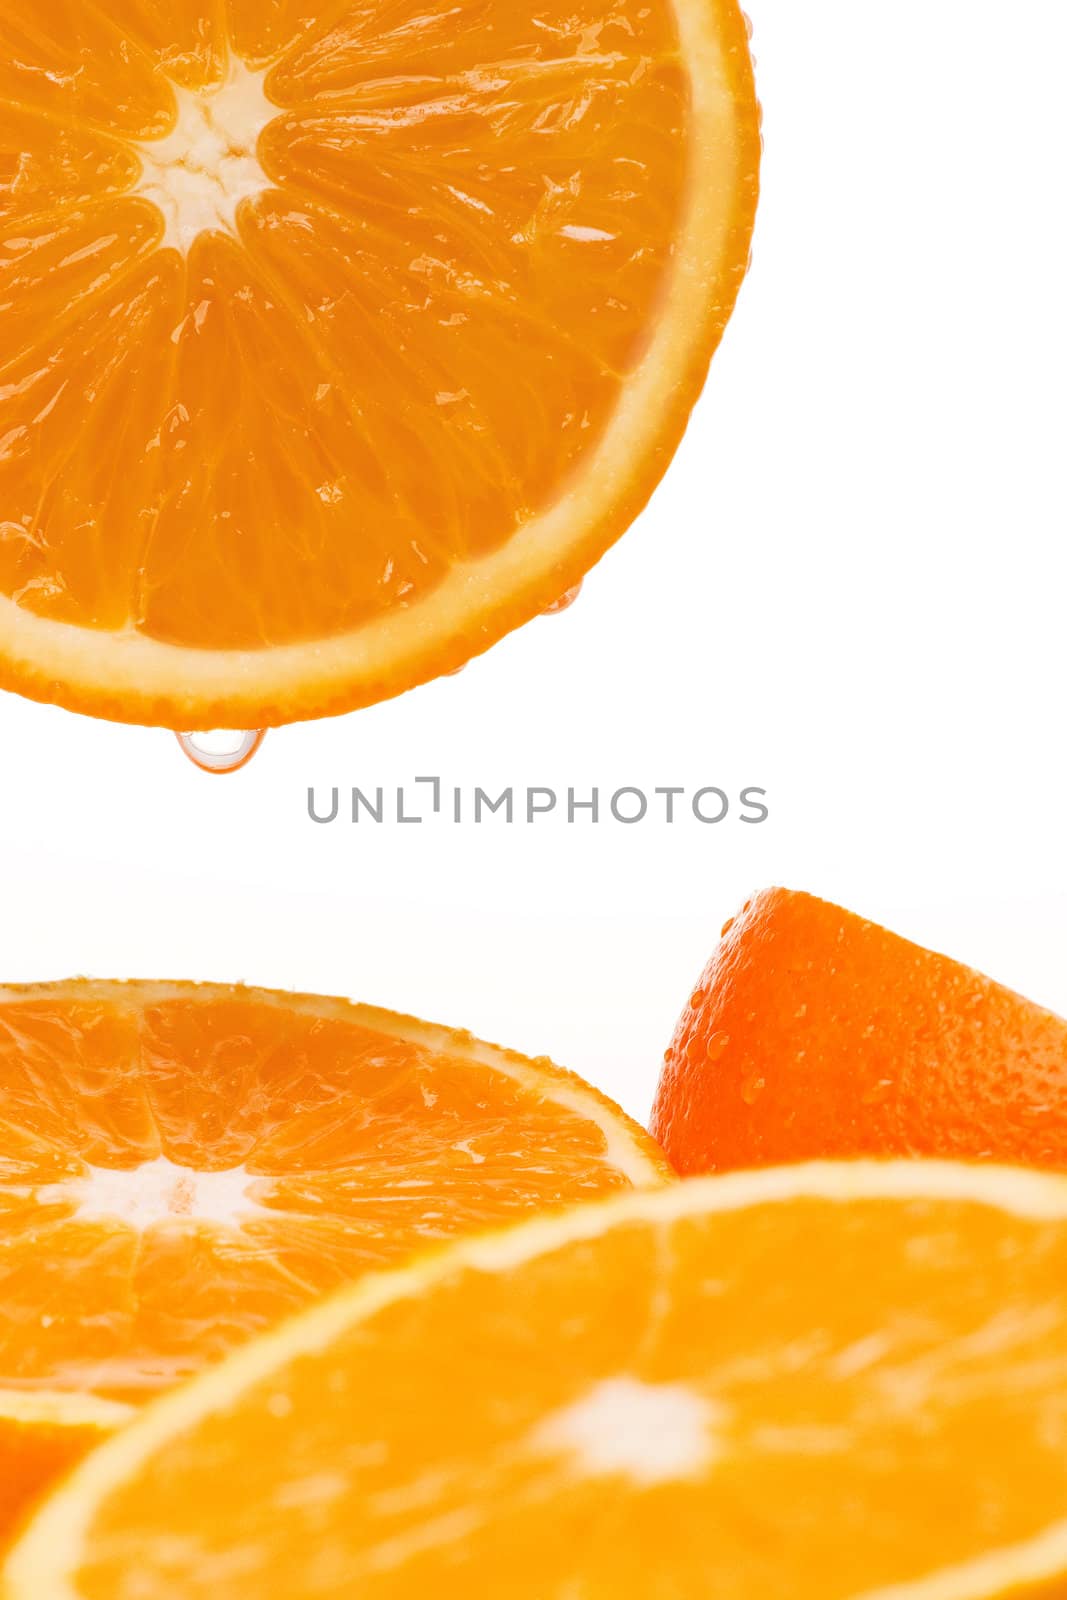 Groups of juicy oranges